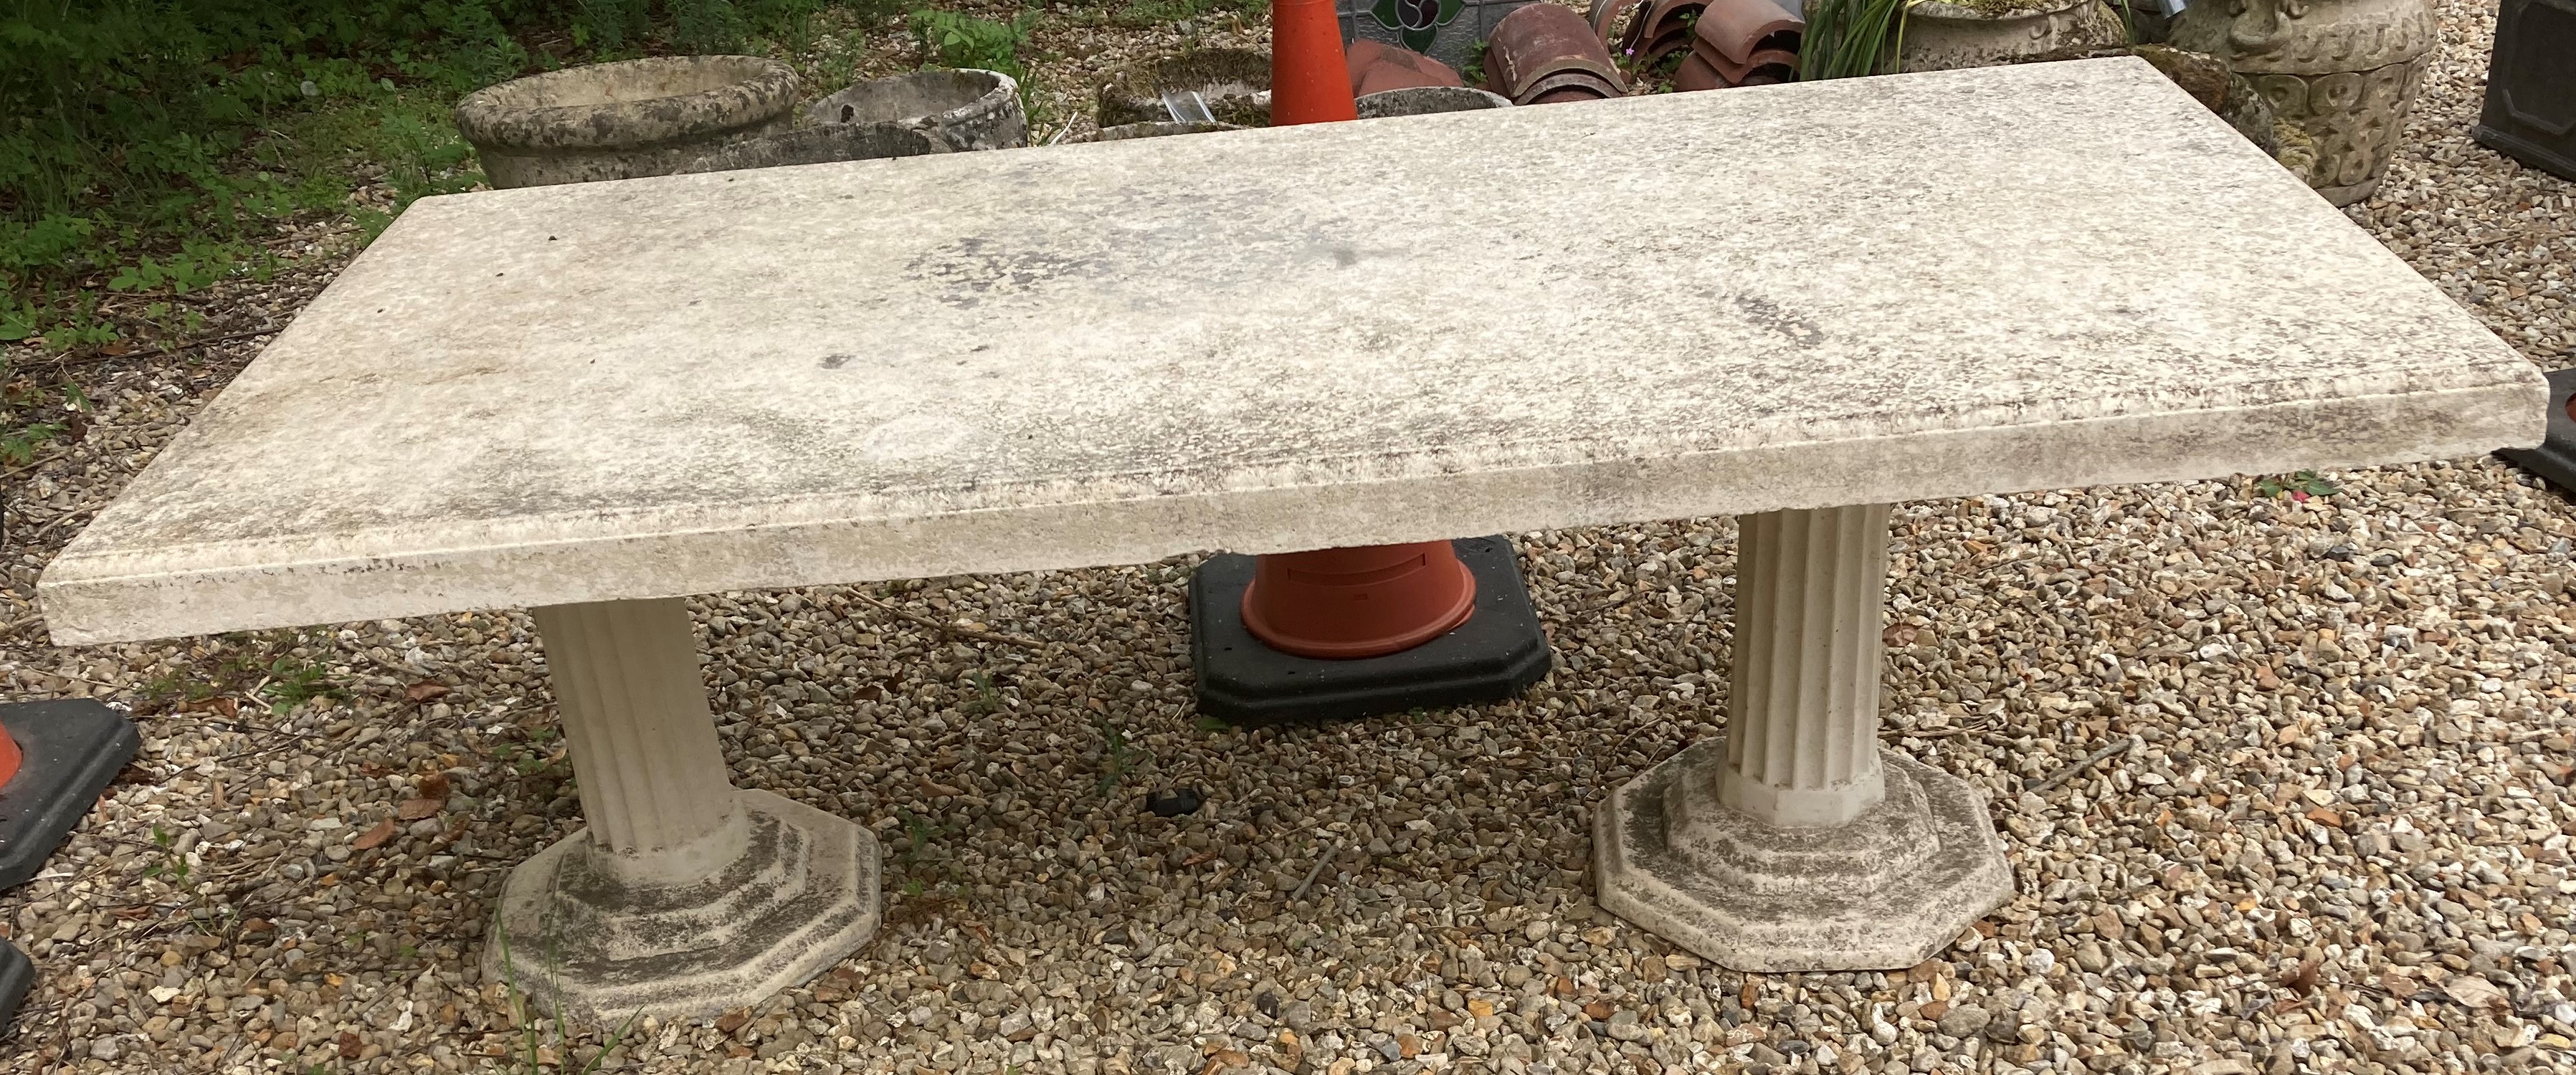 A cast concrete garden table raised on t